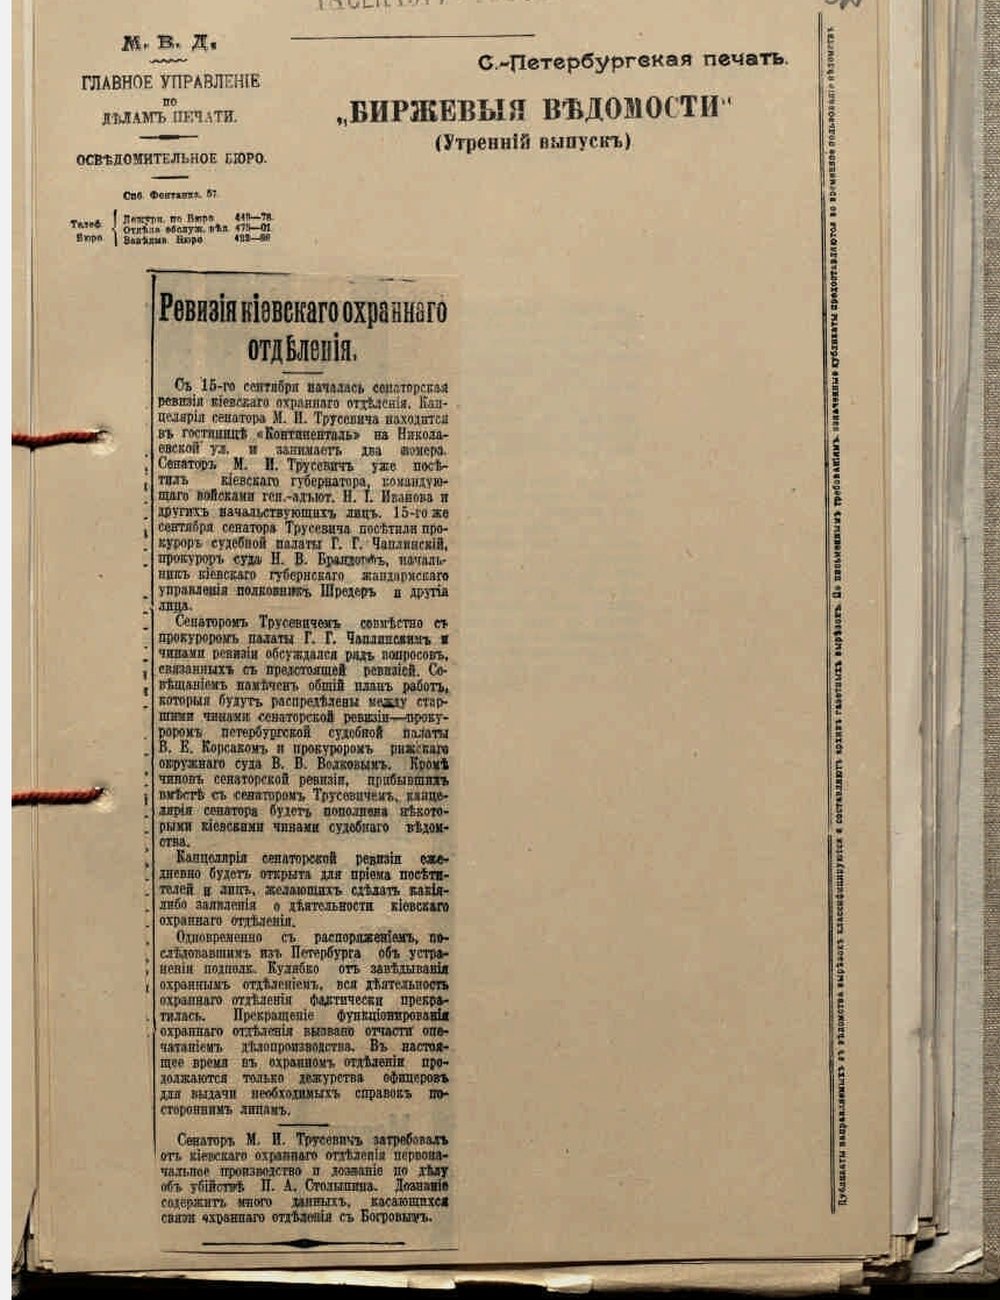 Вырезка из газеты с упоминанием сенатора Трусевича.